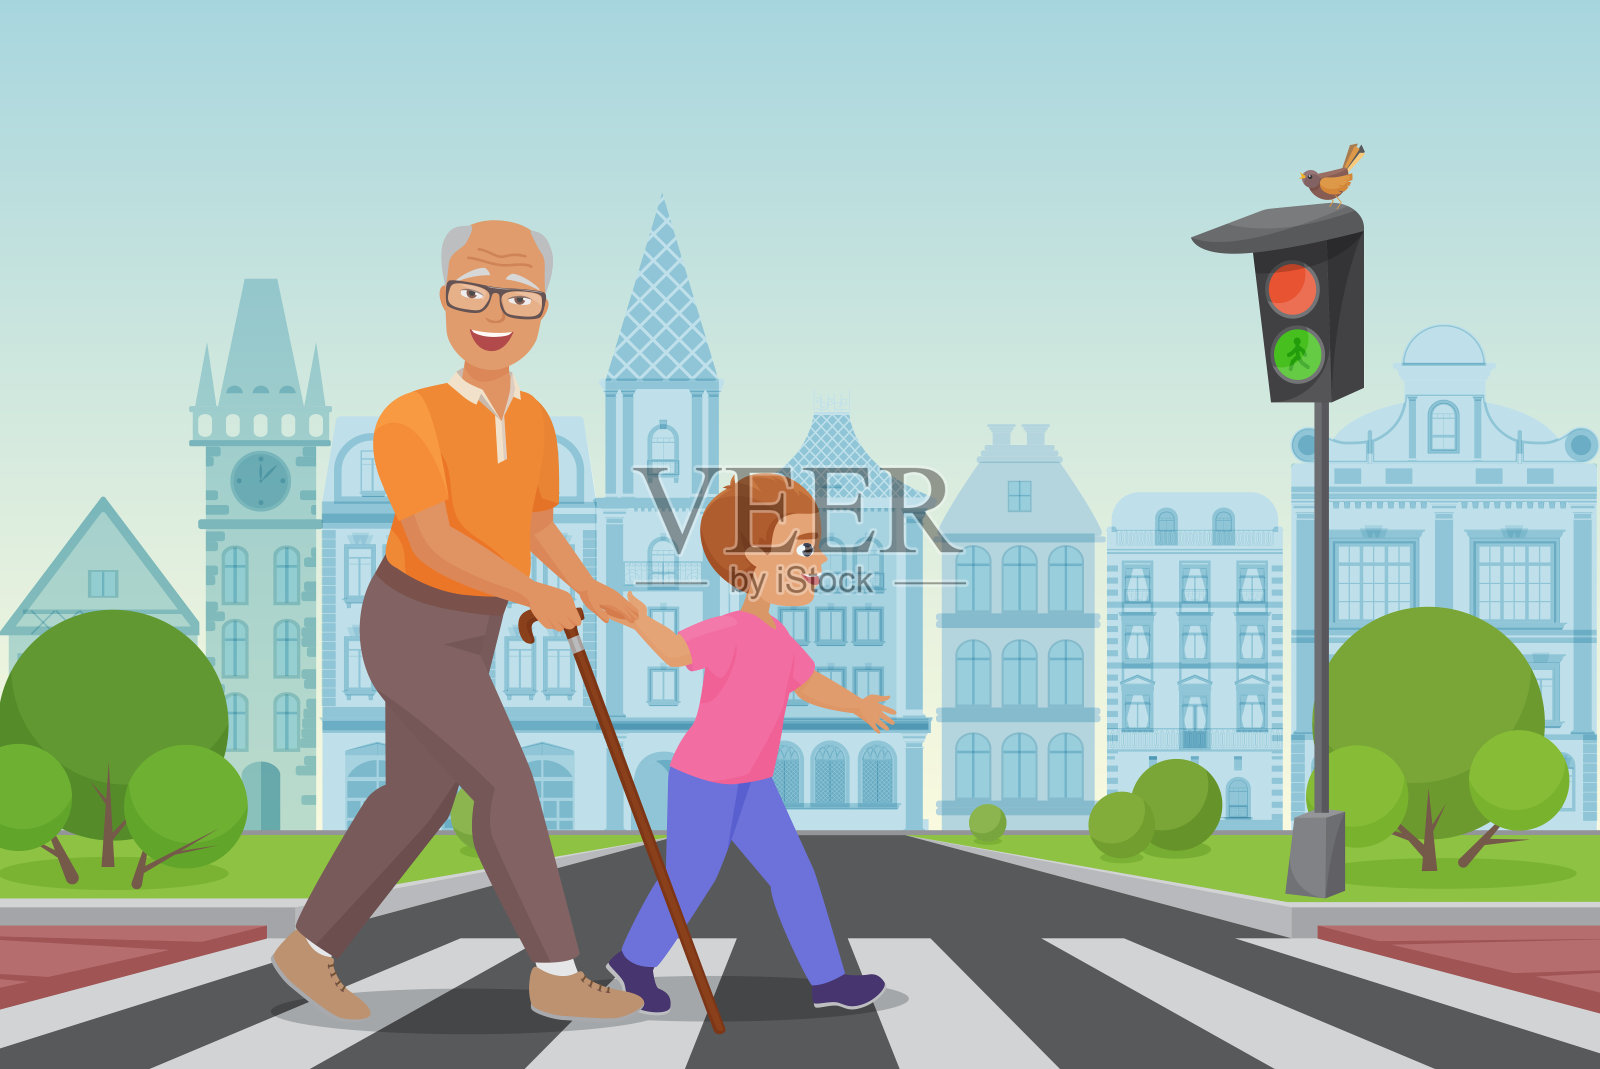 帮助年老的老人。在城市矢量图中，小男孩帮助一位老人过马路。插画图片素材